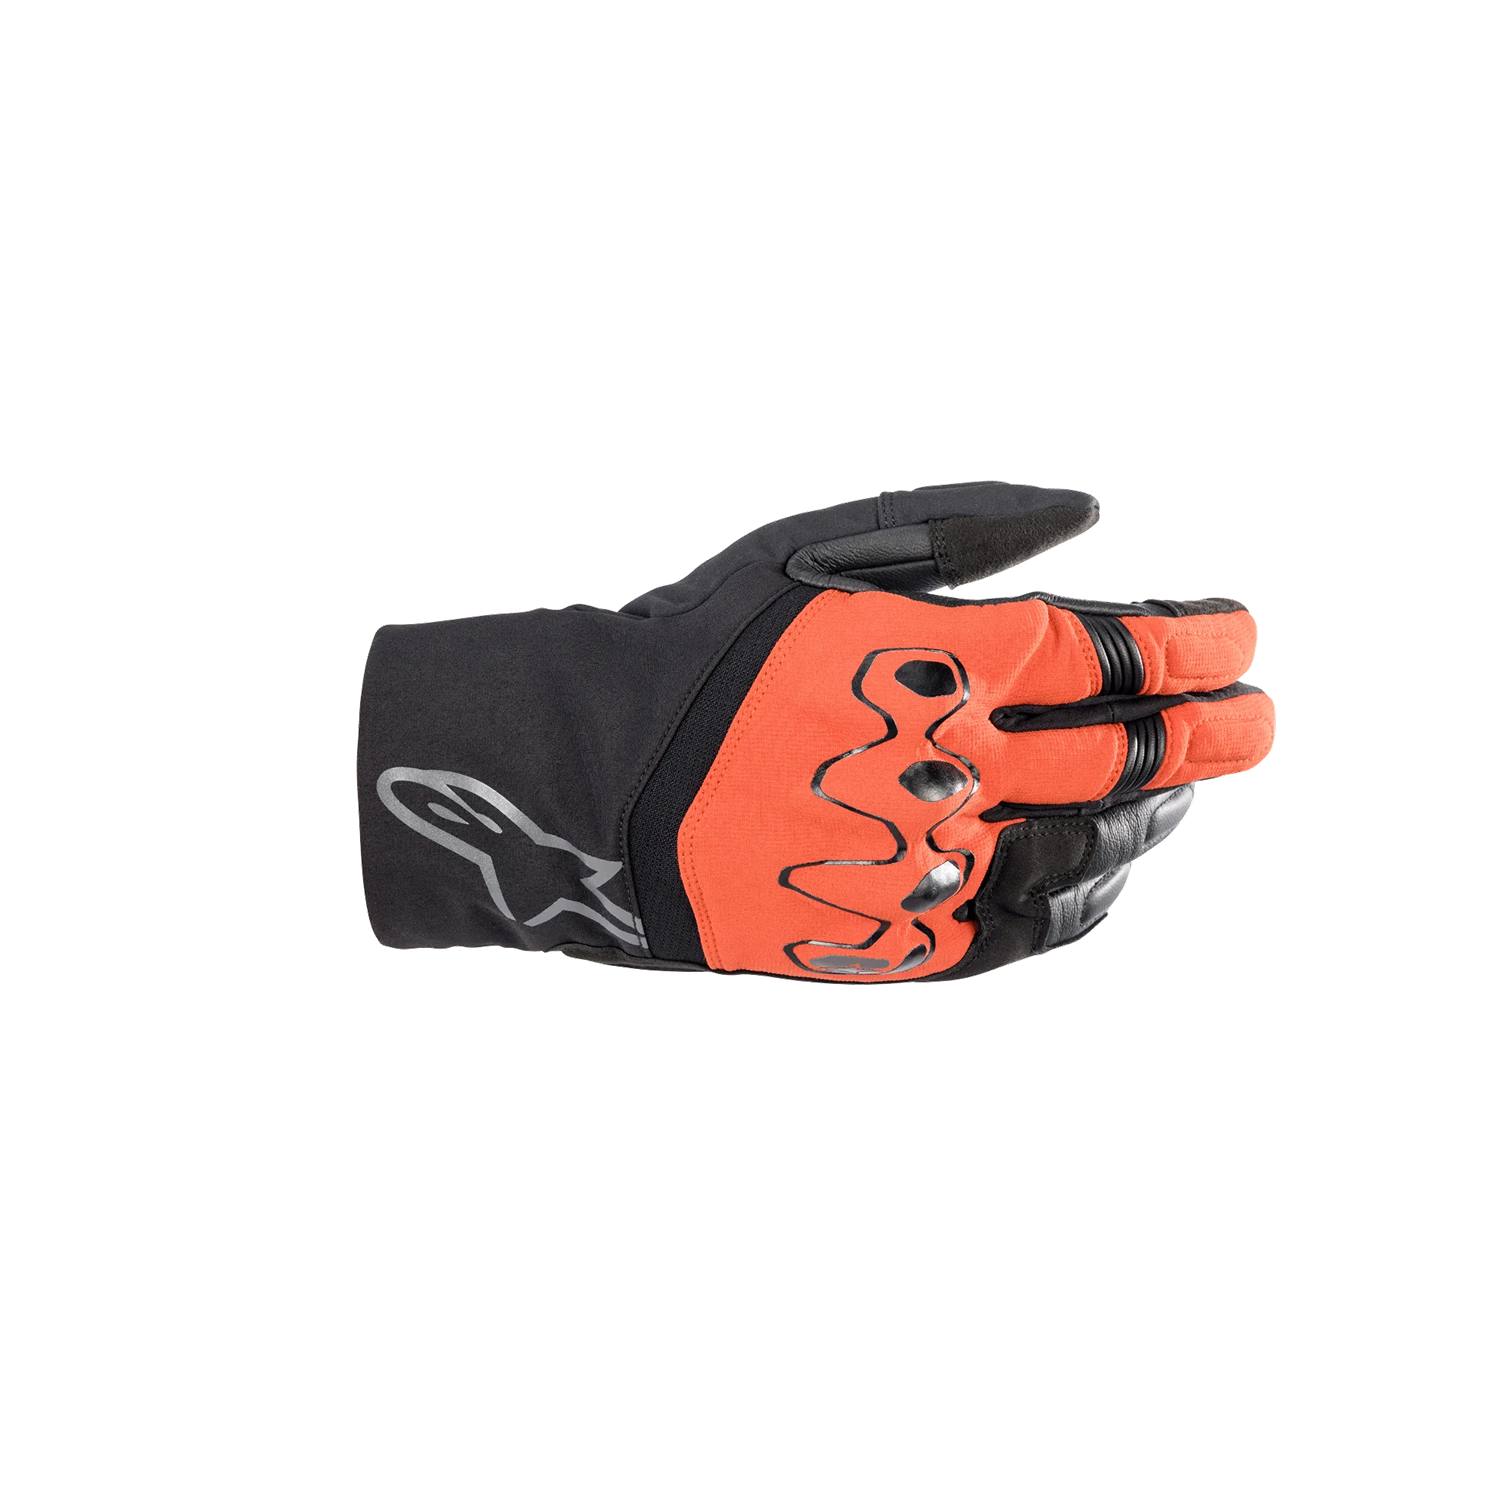 Image of Alpinestars Hyde Xt Drystar Xf Gloves Fire Red Black Size 2XL EN